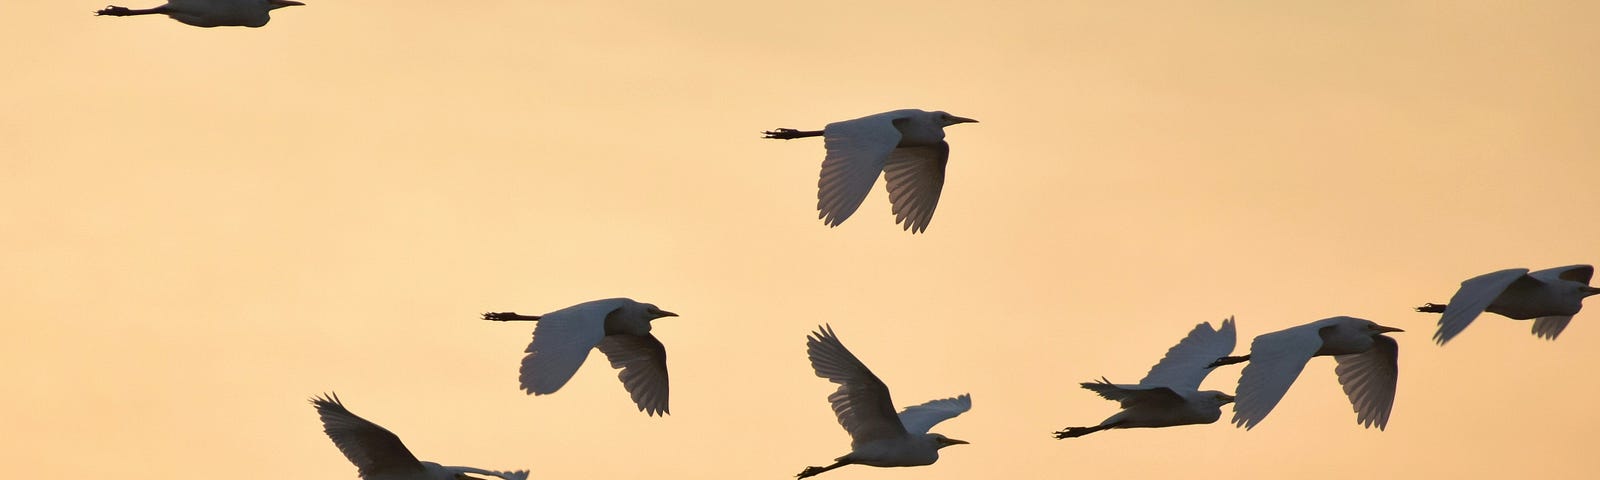 A flock of Egrets flying during dusk.